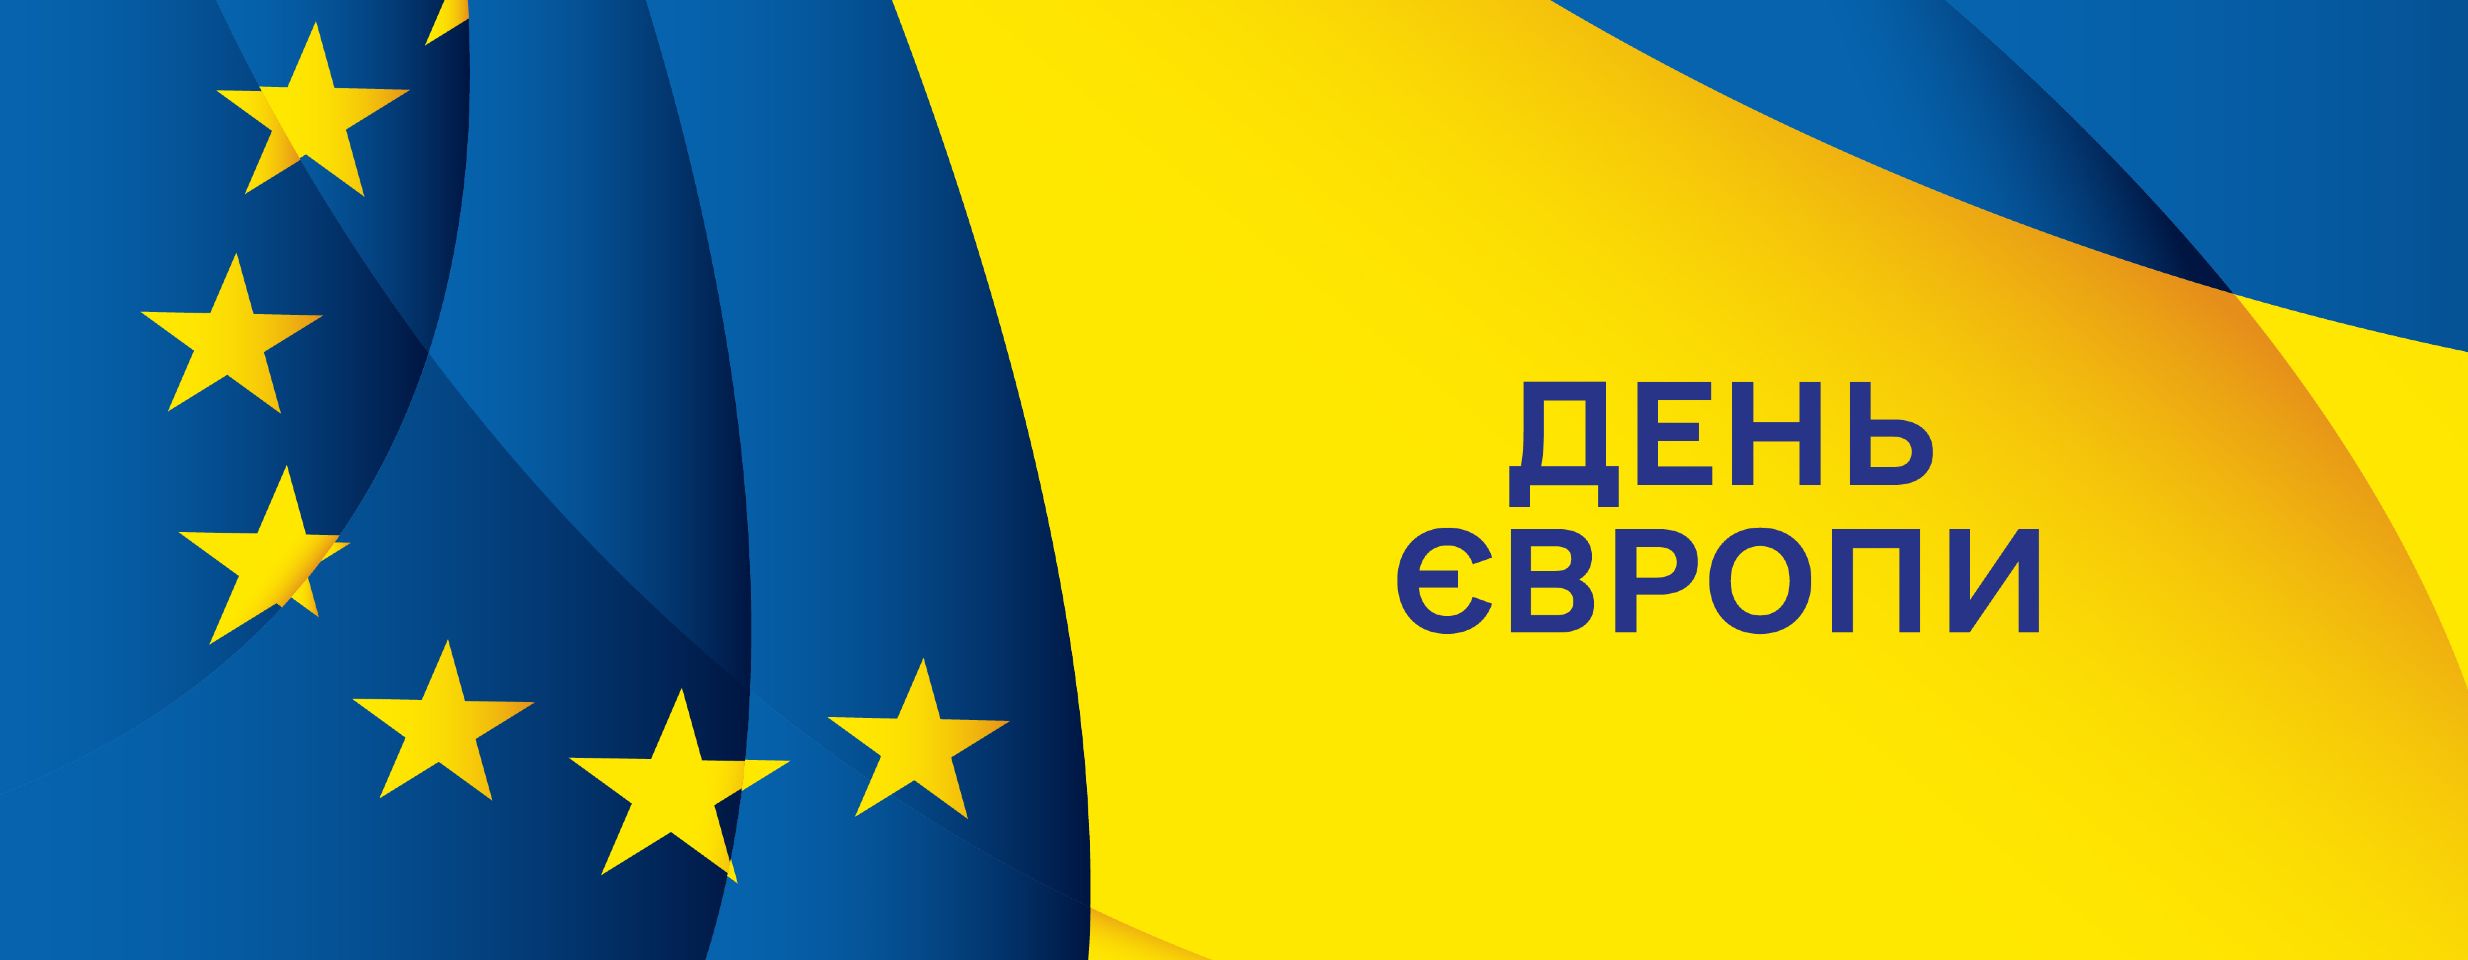 9 мая Украина отмечает День Европы вместе с ЕС